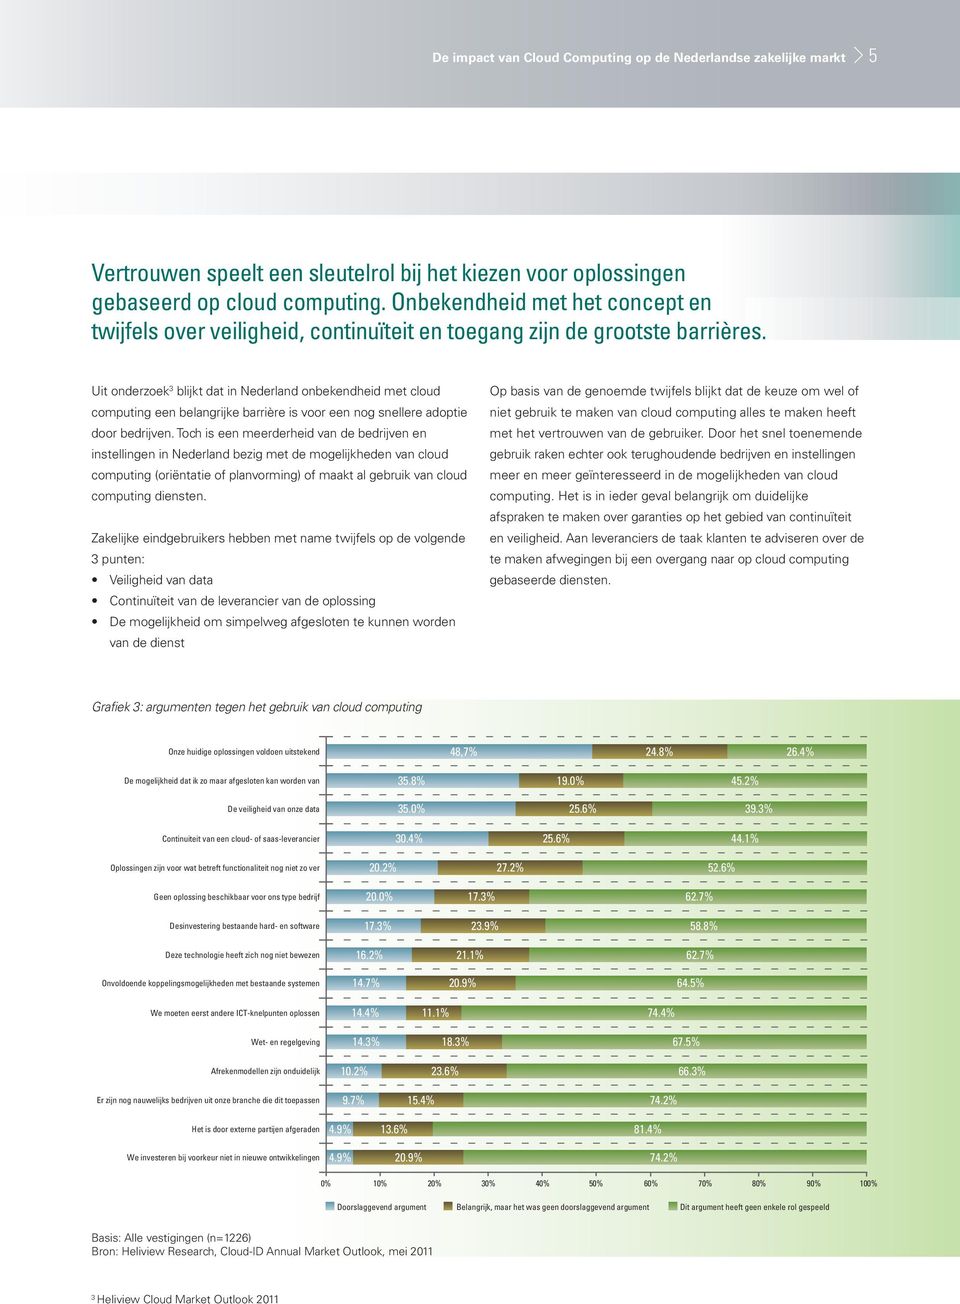 Uit onderzoek 3 blijkt dat in Nederland onbekendheid met cloud computing een belangrijke barrière is voor een nog snellere adoptie door bedrijven.